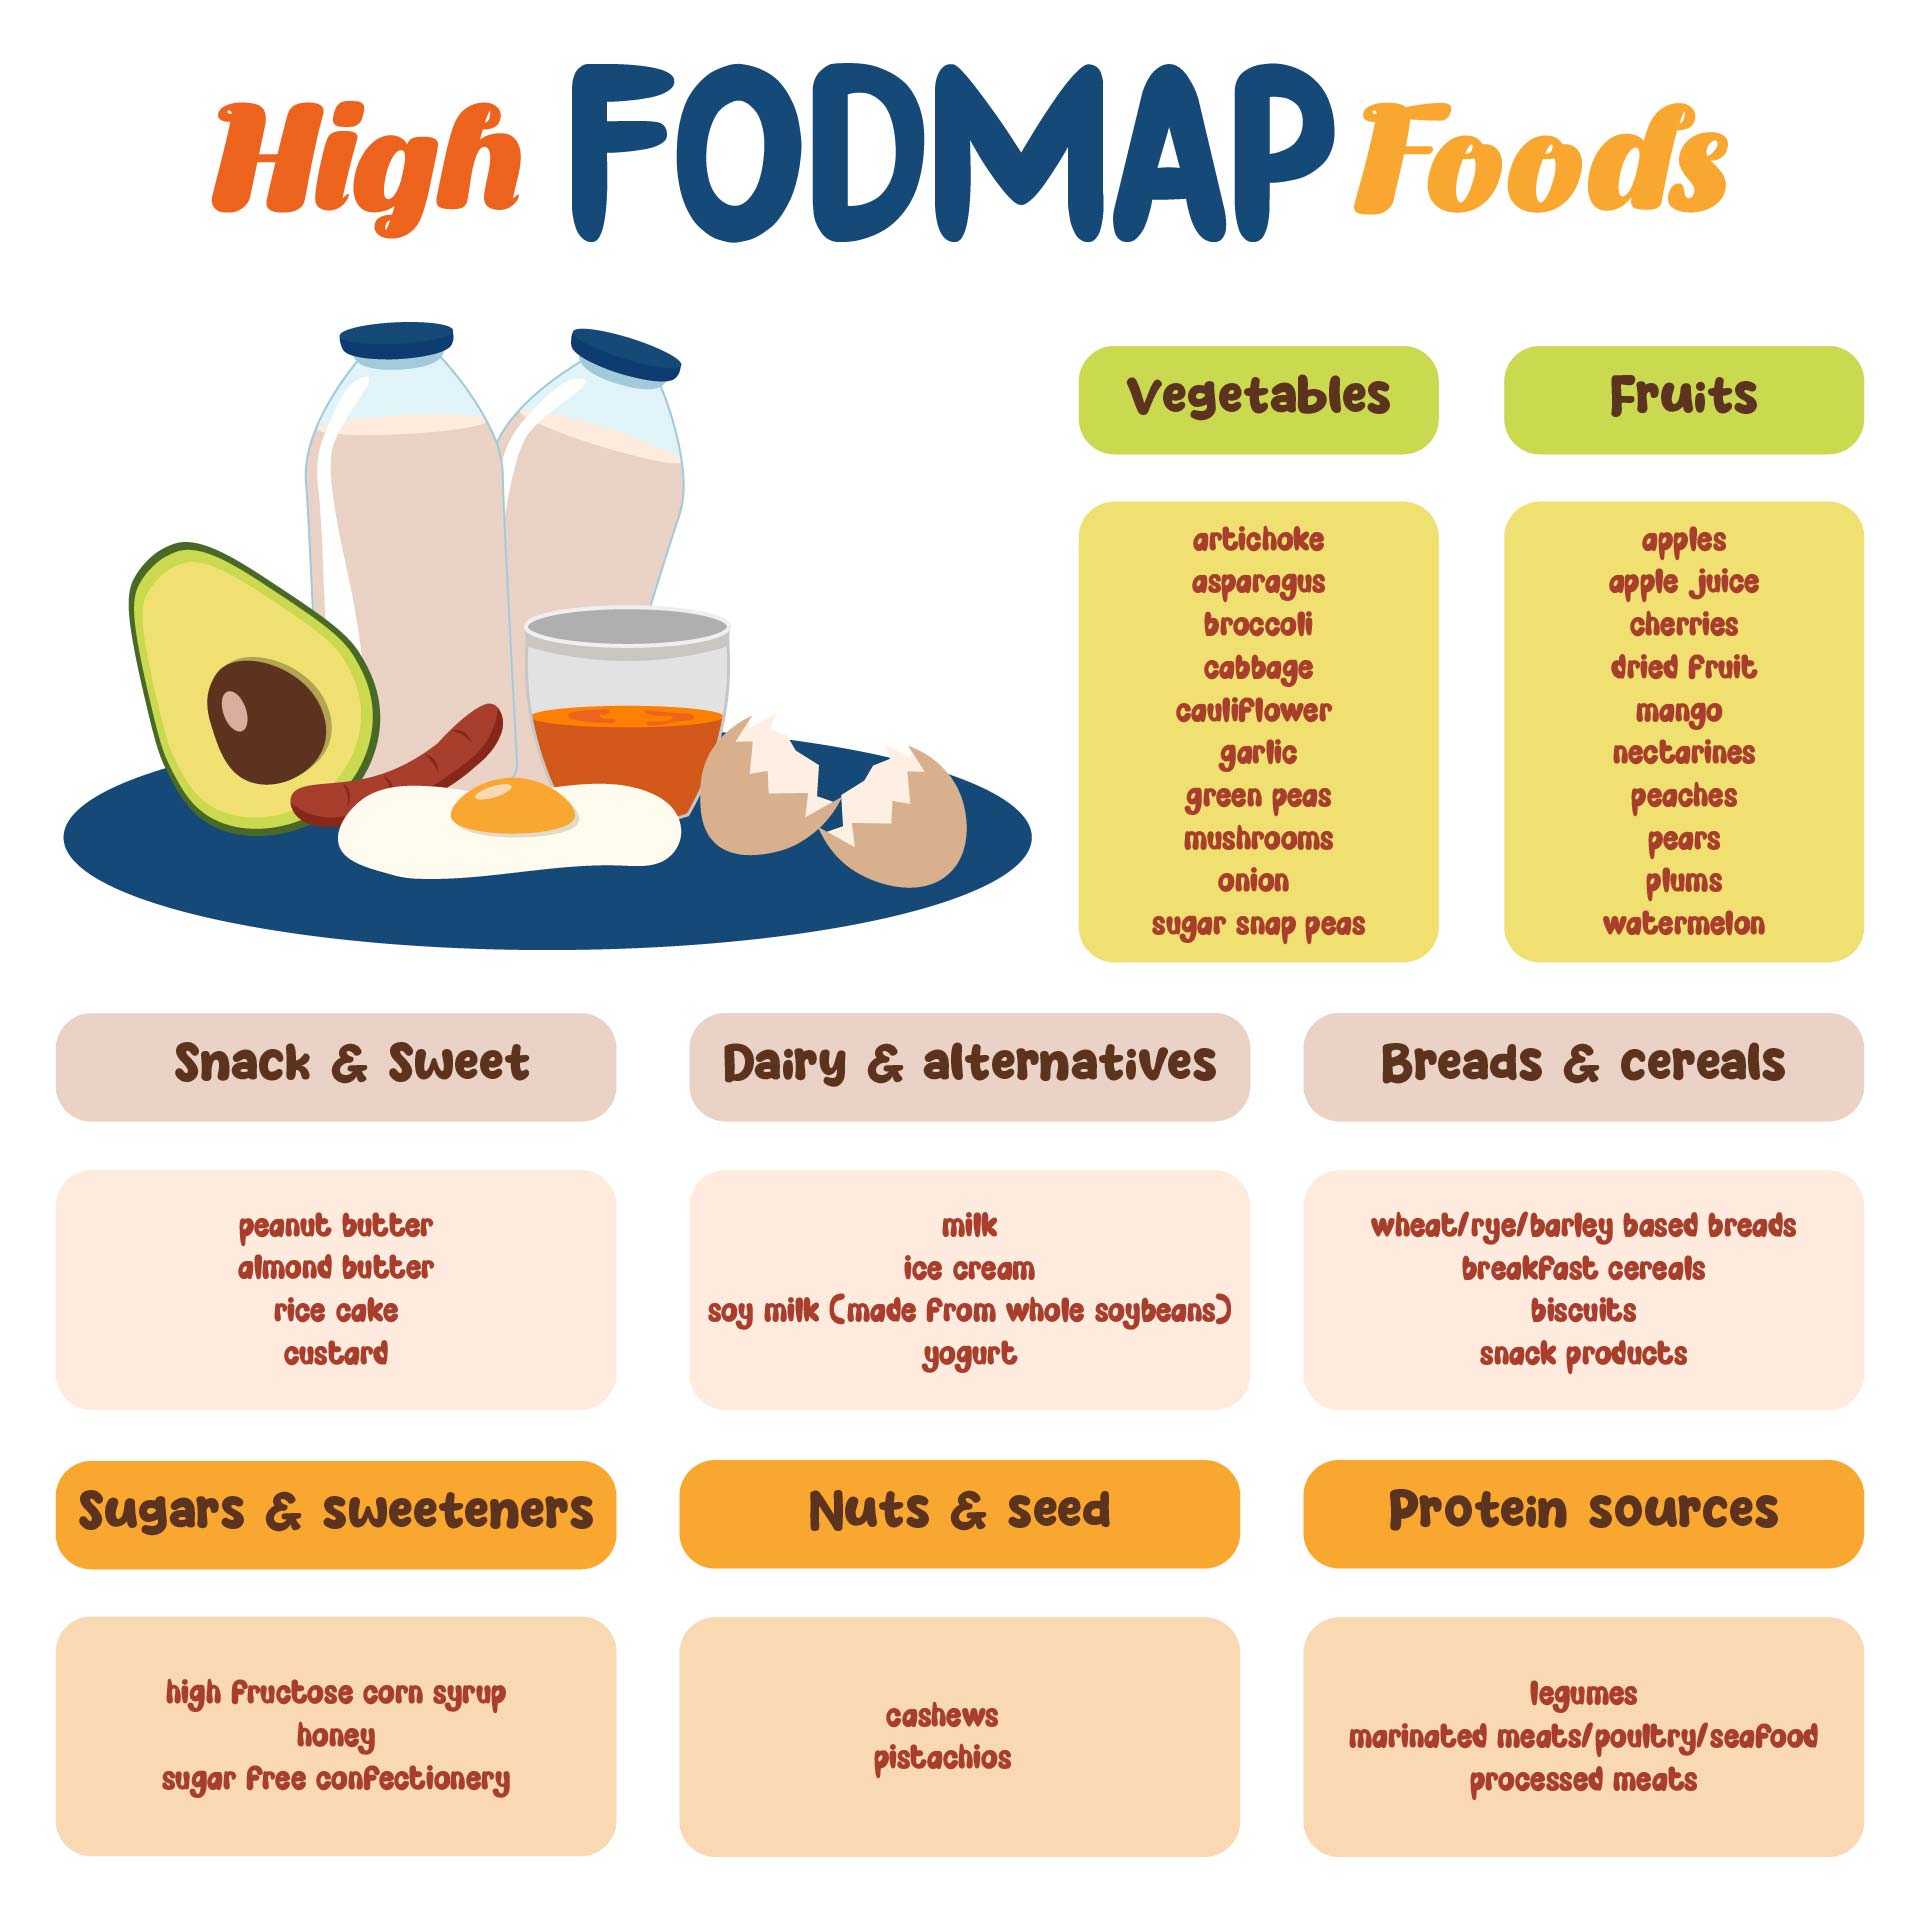 8 Best Images of FODMAP Diet Printable Out - Dr. Oz High FODMAP Food